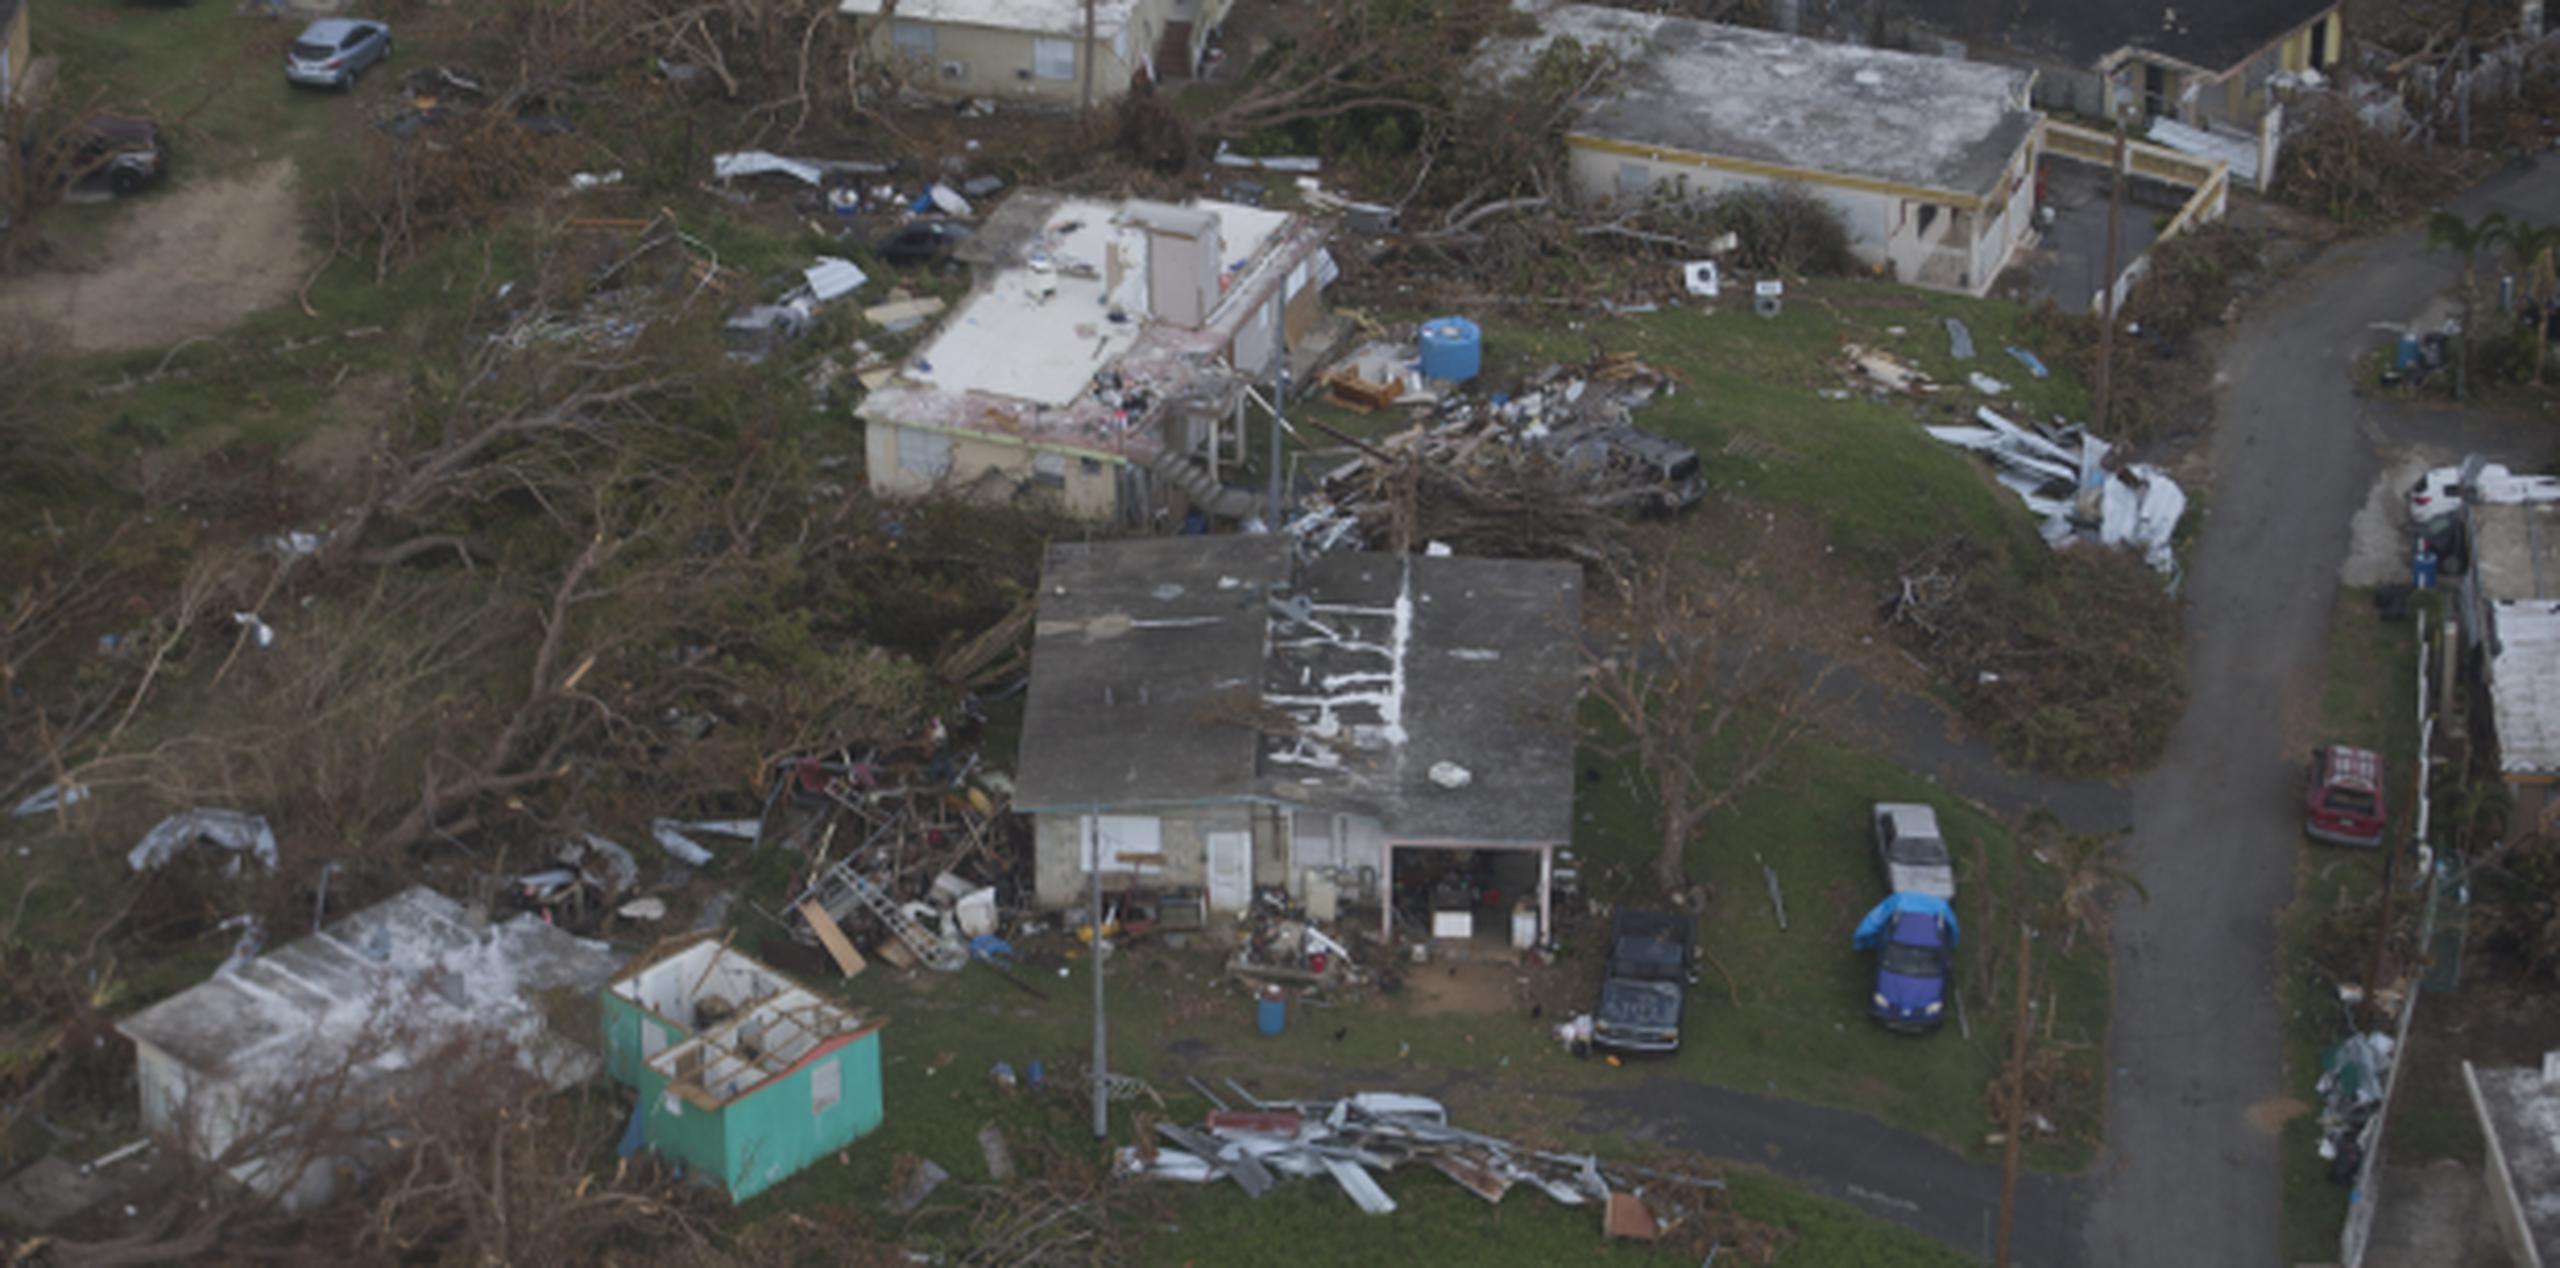 Se estima que el 60% de las 1,500 personas de Maunabo que se registraron con FEMA tienen pérdida total en sus propiedades. (xavier.araujo@gfrmedia.com)